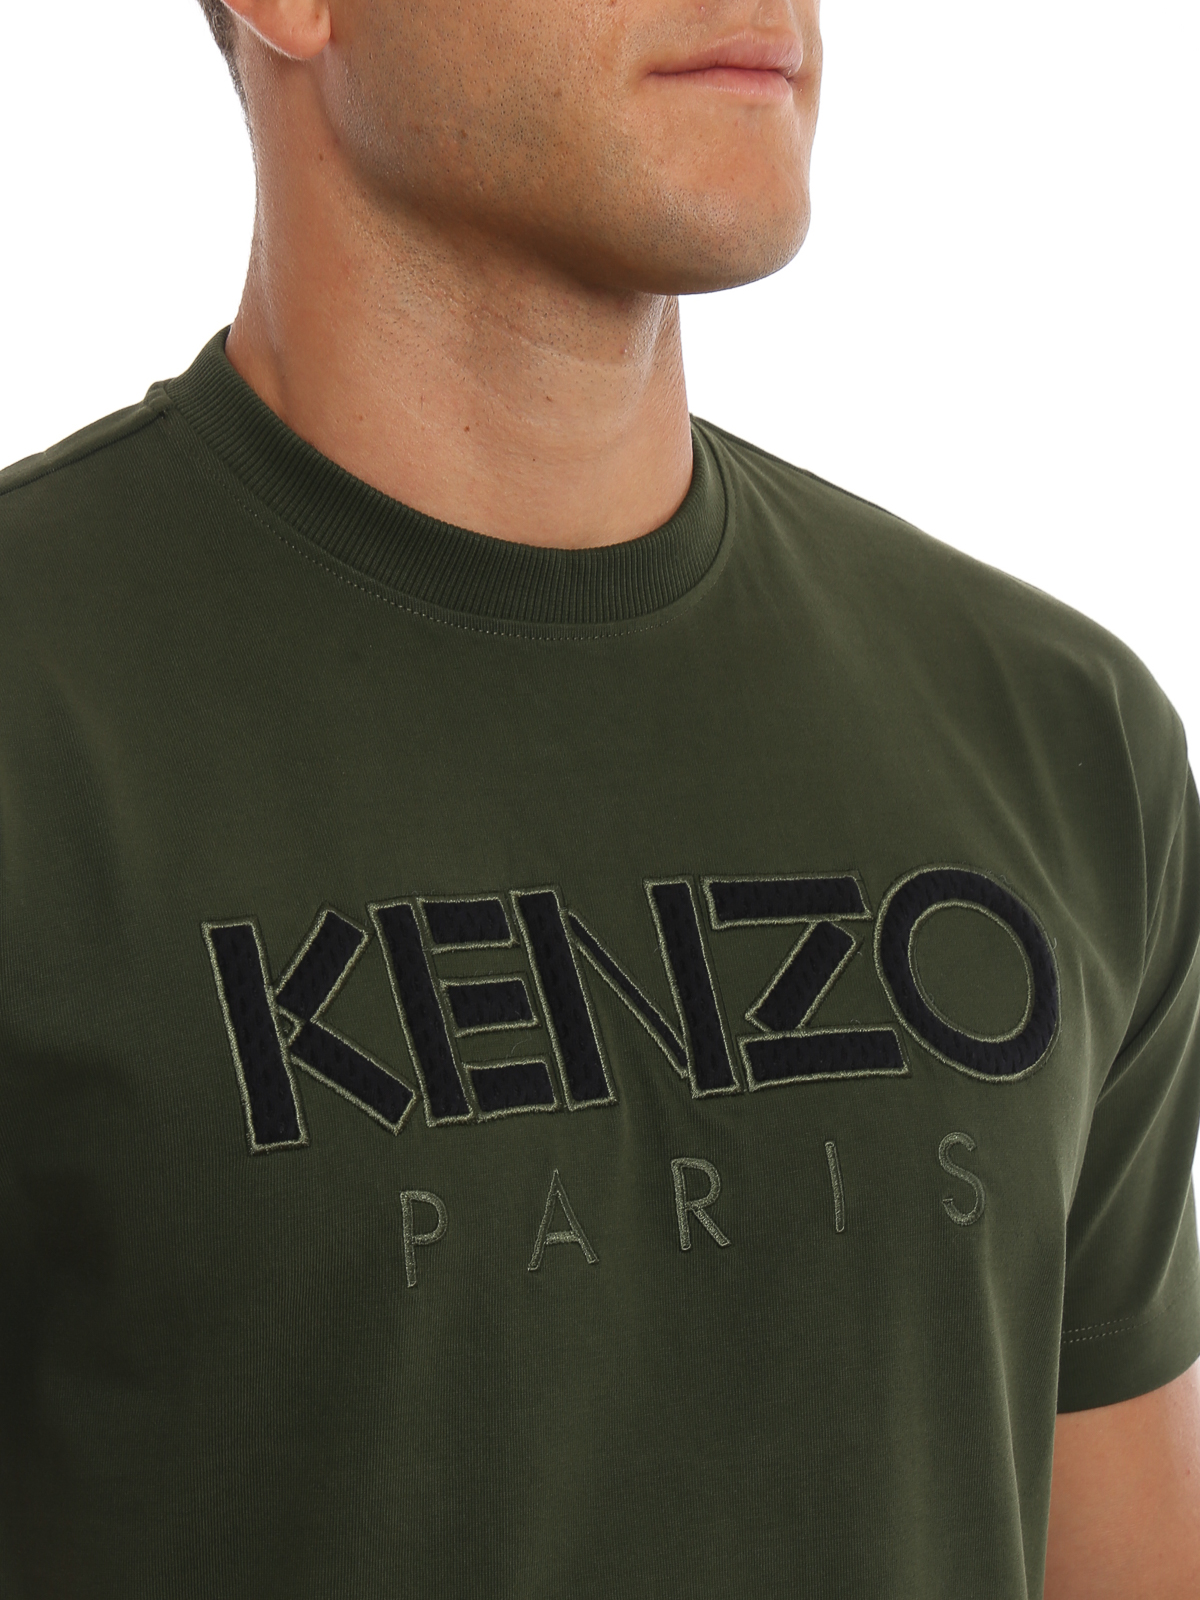 kenzo green t shirt